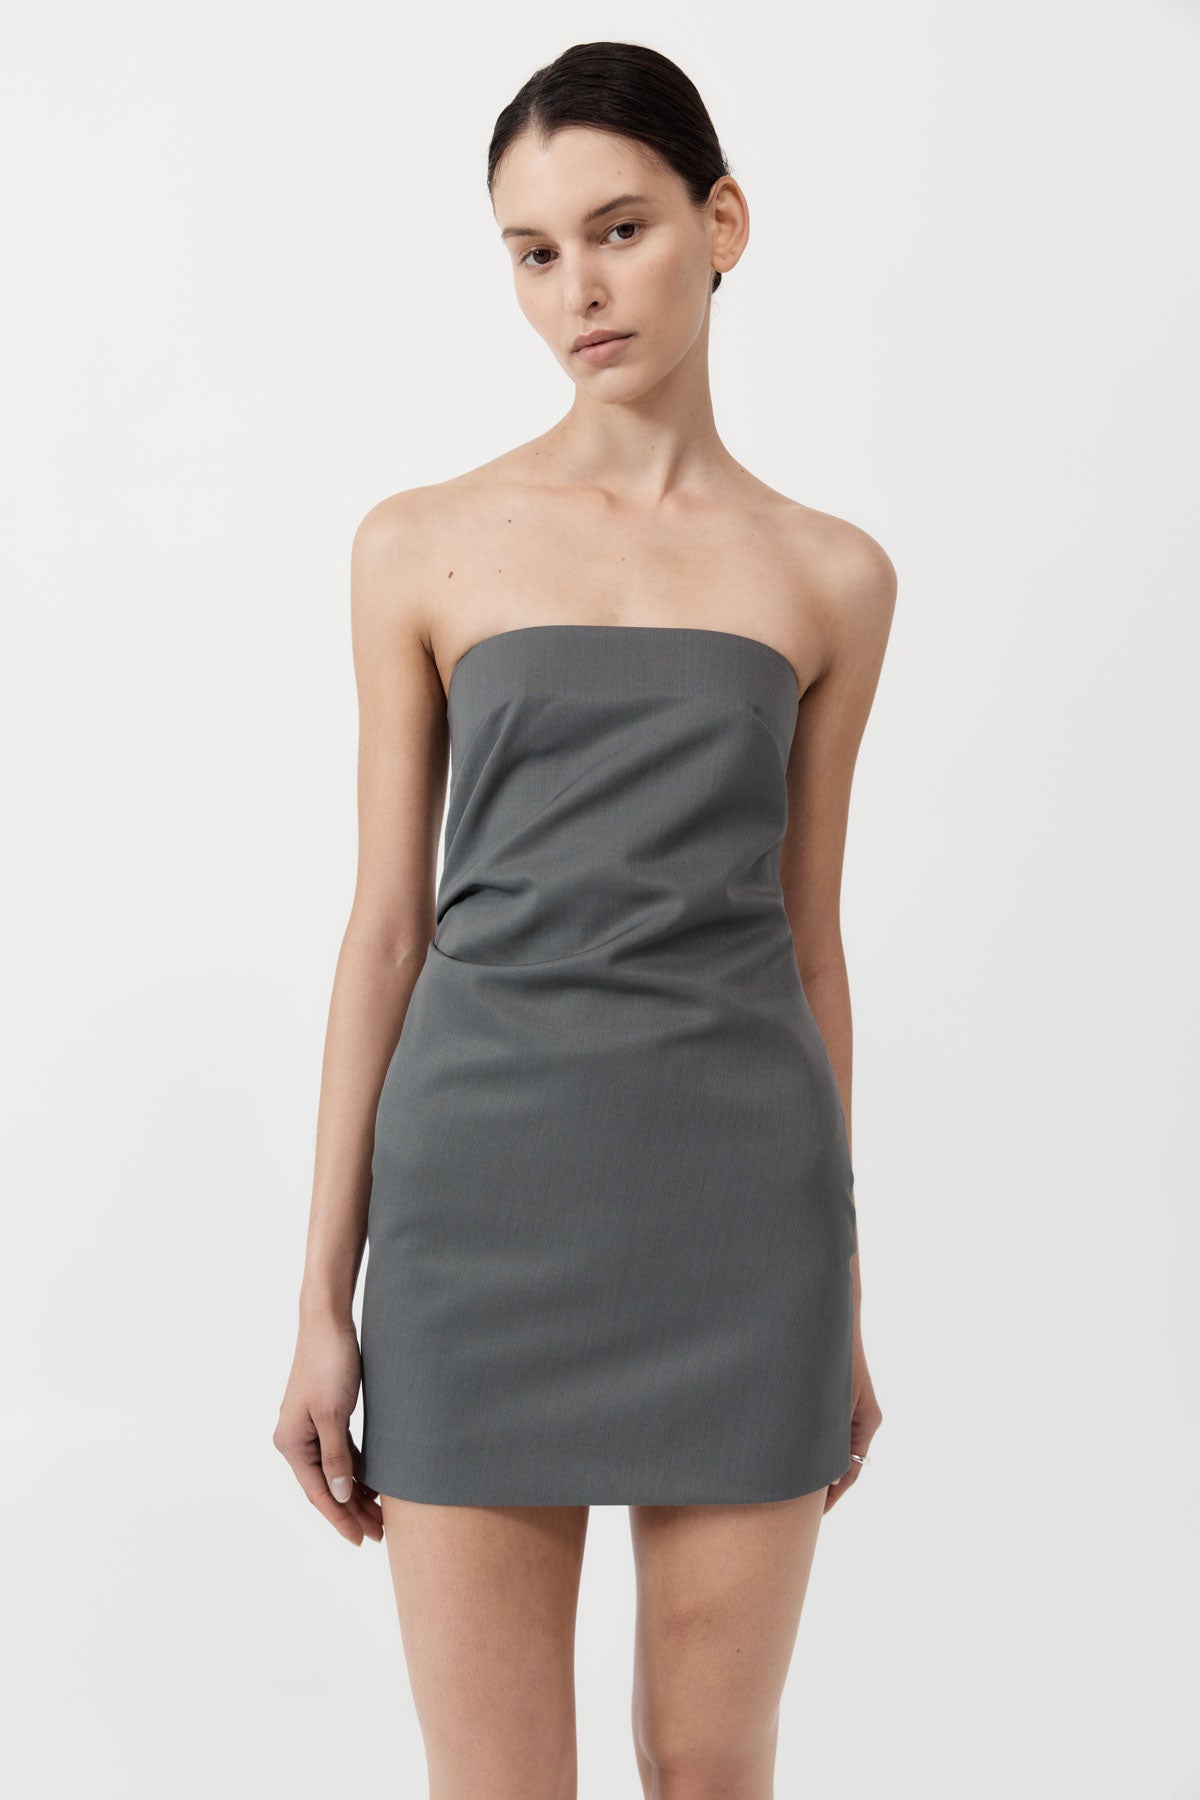 Tuck Mini Dress - Pewter Grey